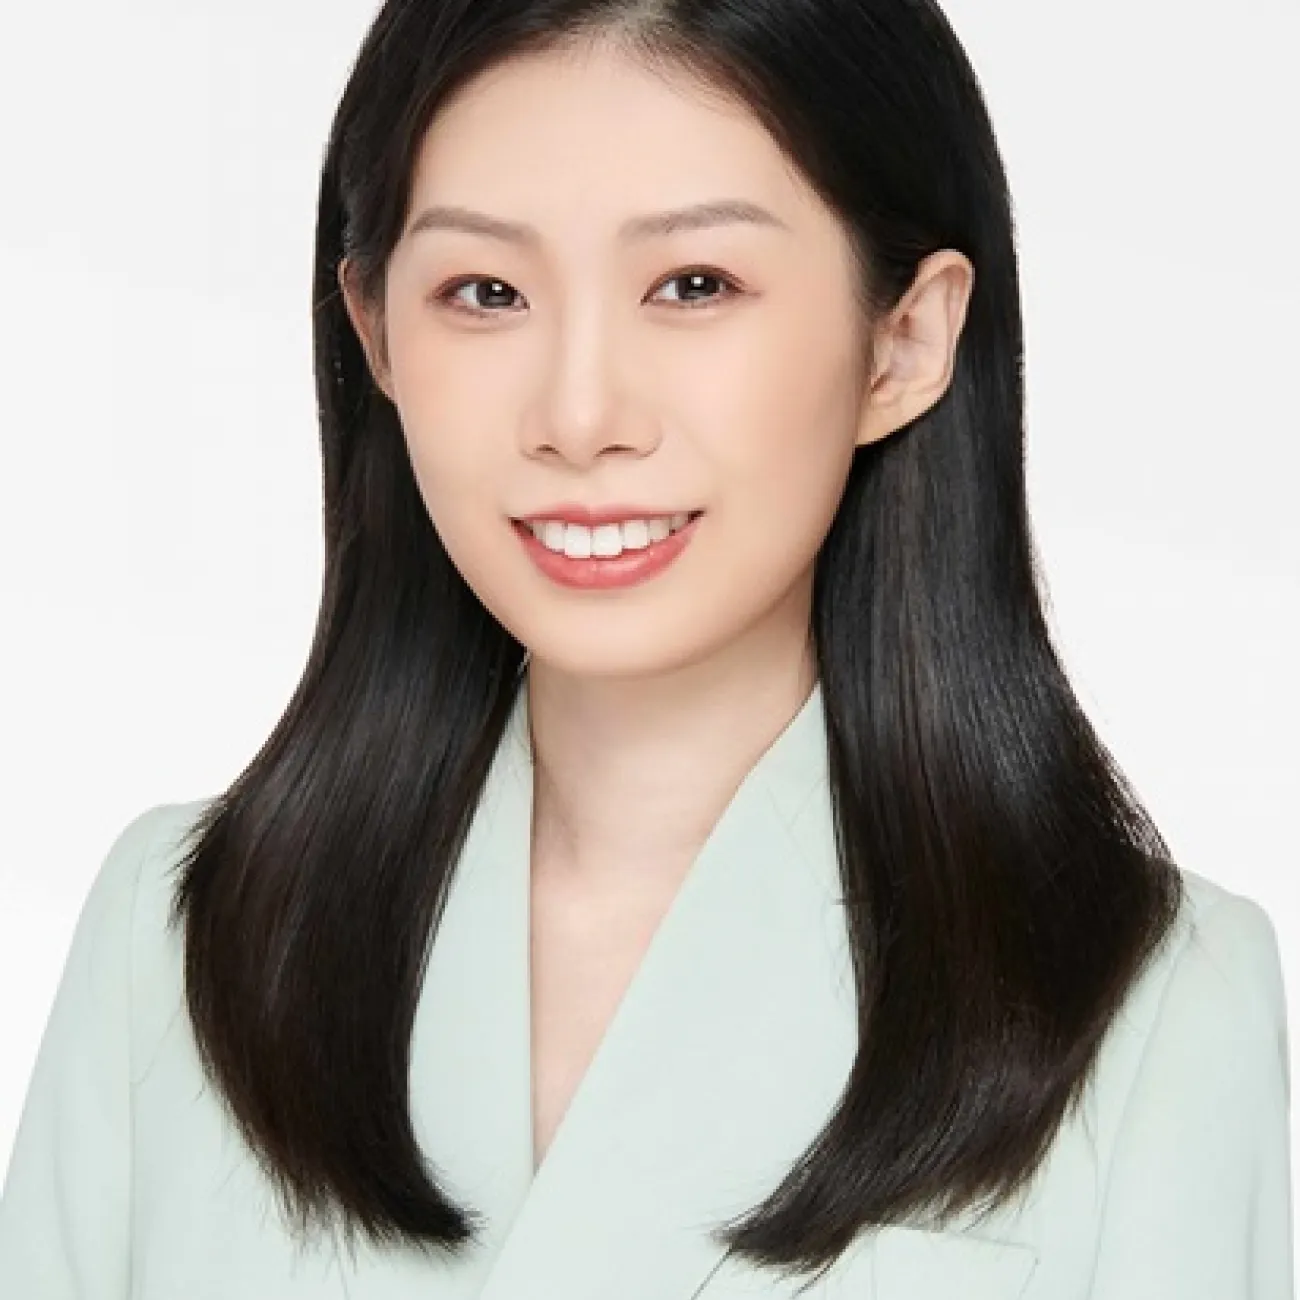 Miss Xiaohan Yu